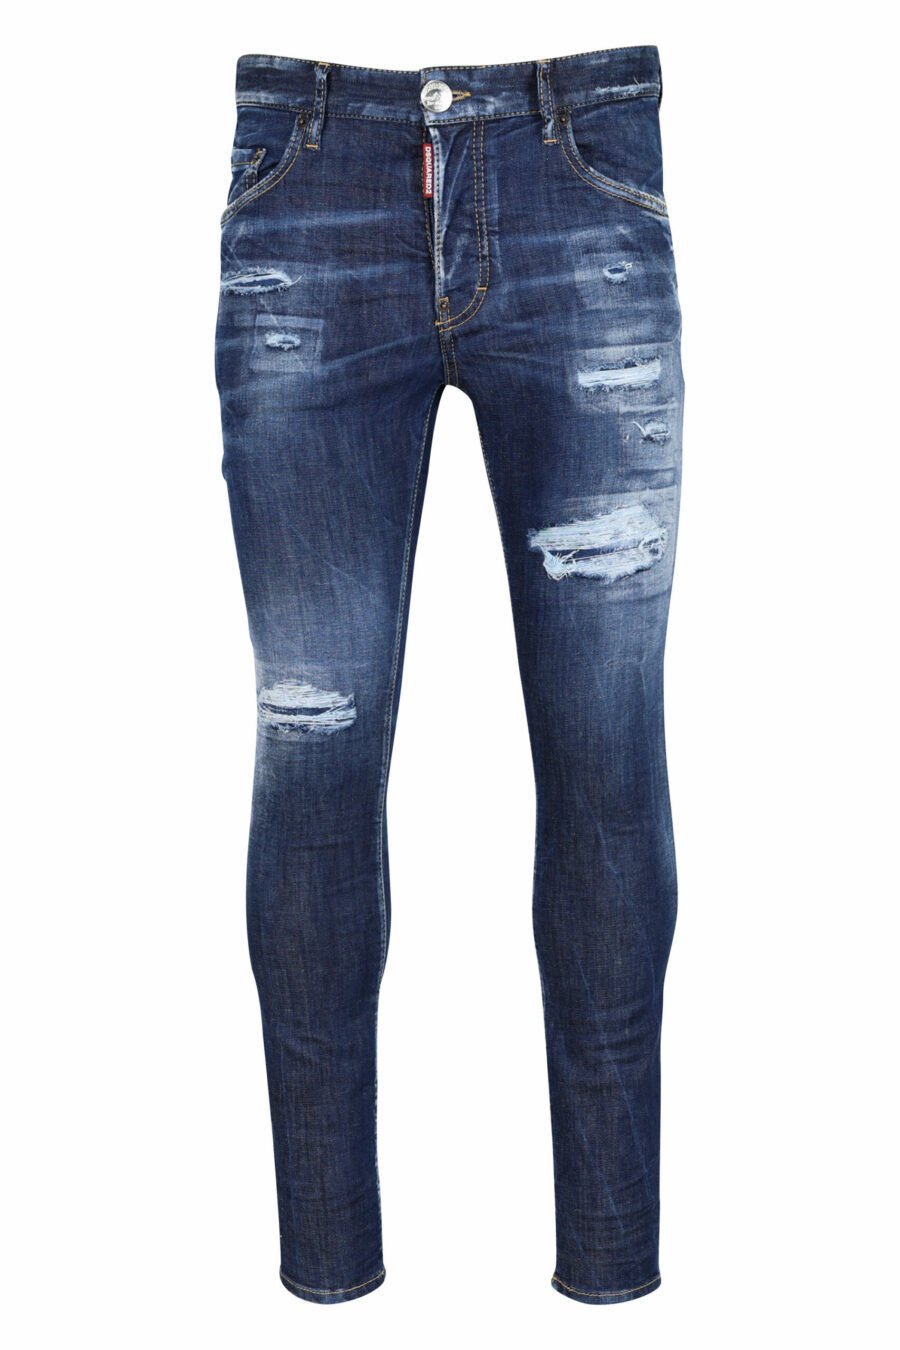 Blaue "super twinky jean" Jeans mit Rissen und ausgefranst - 8054148106201 skaliert